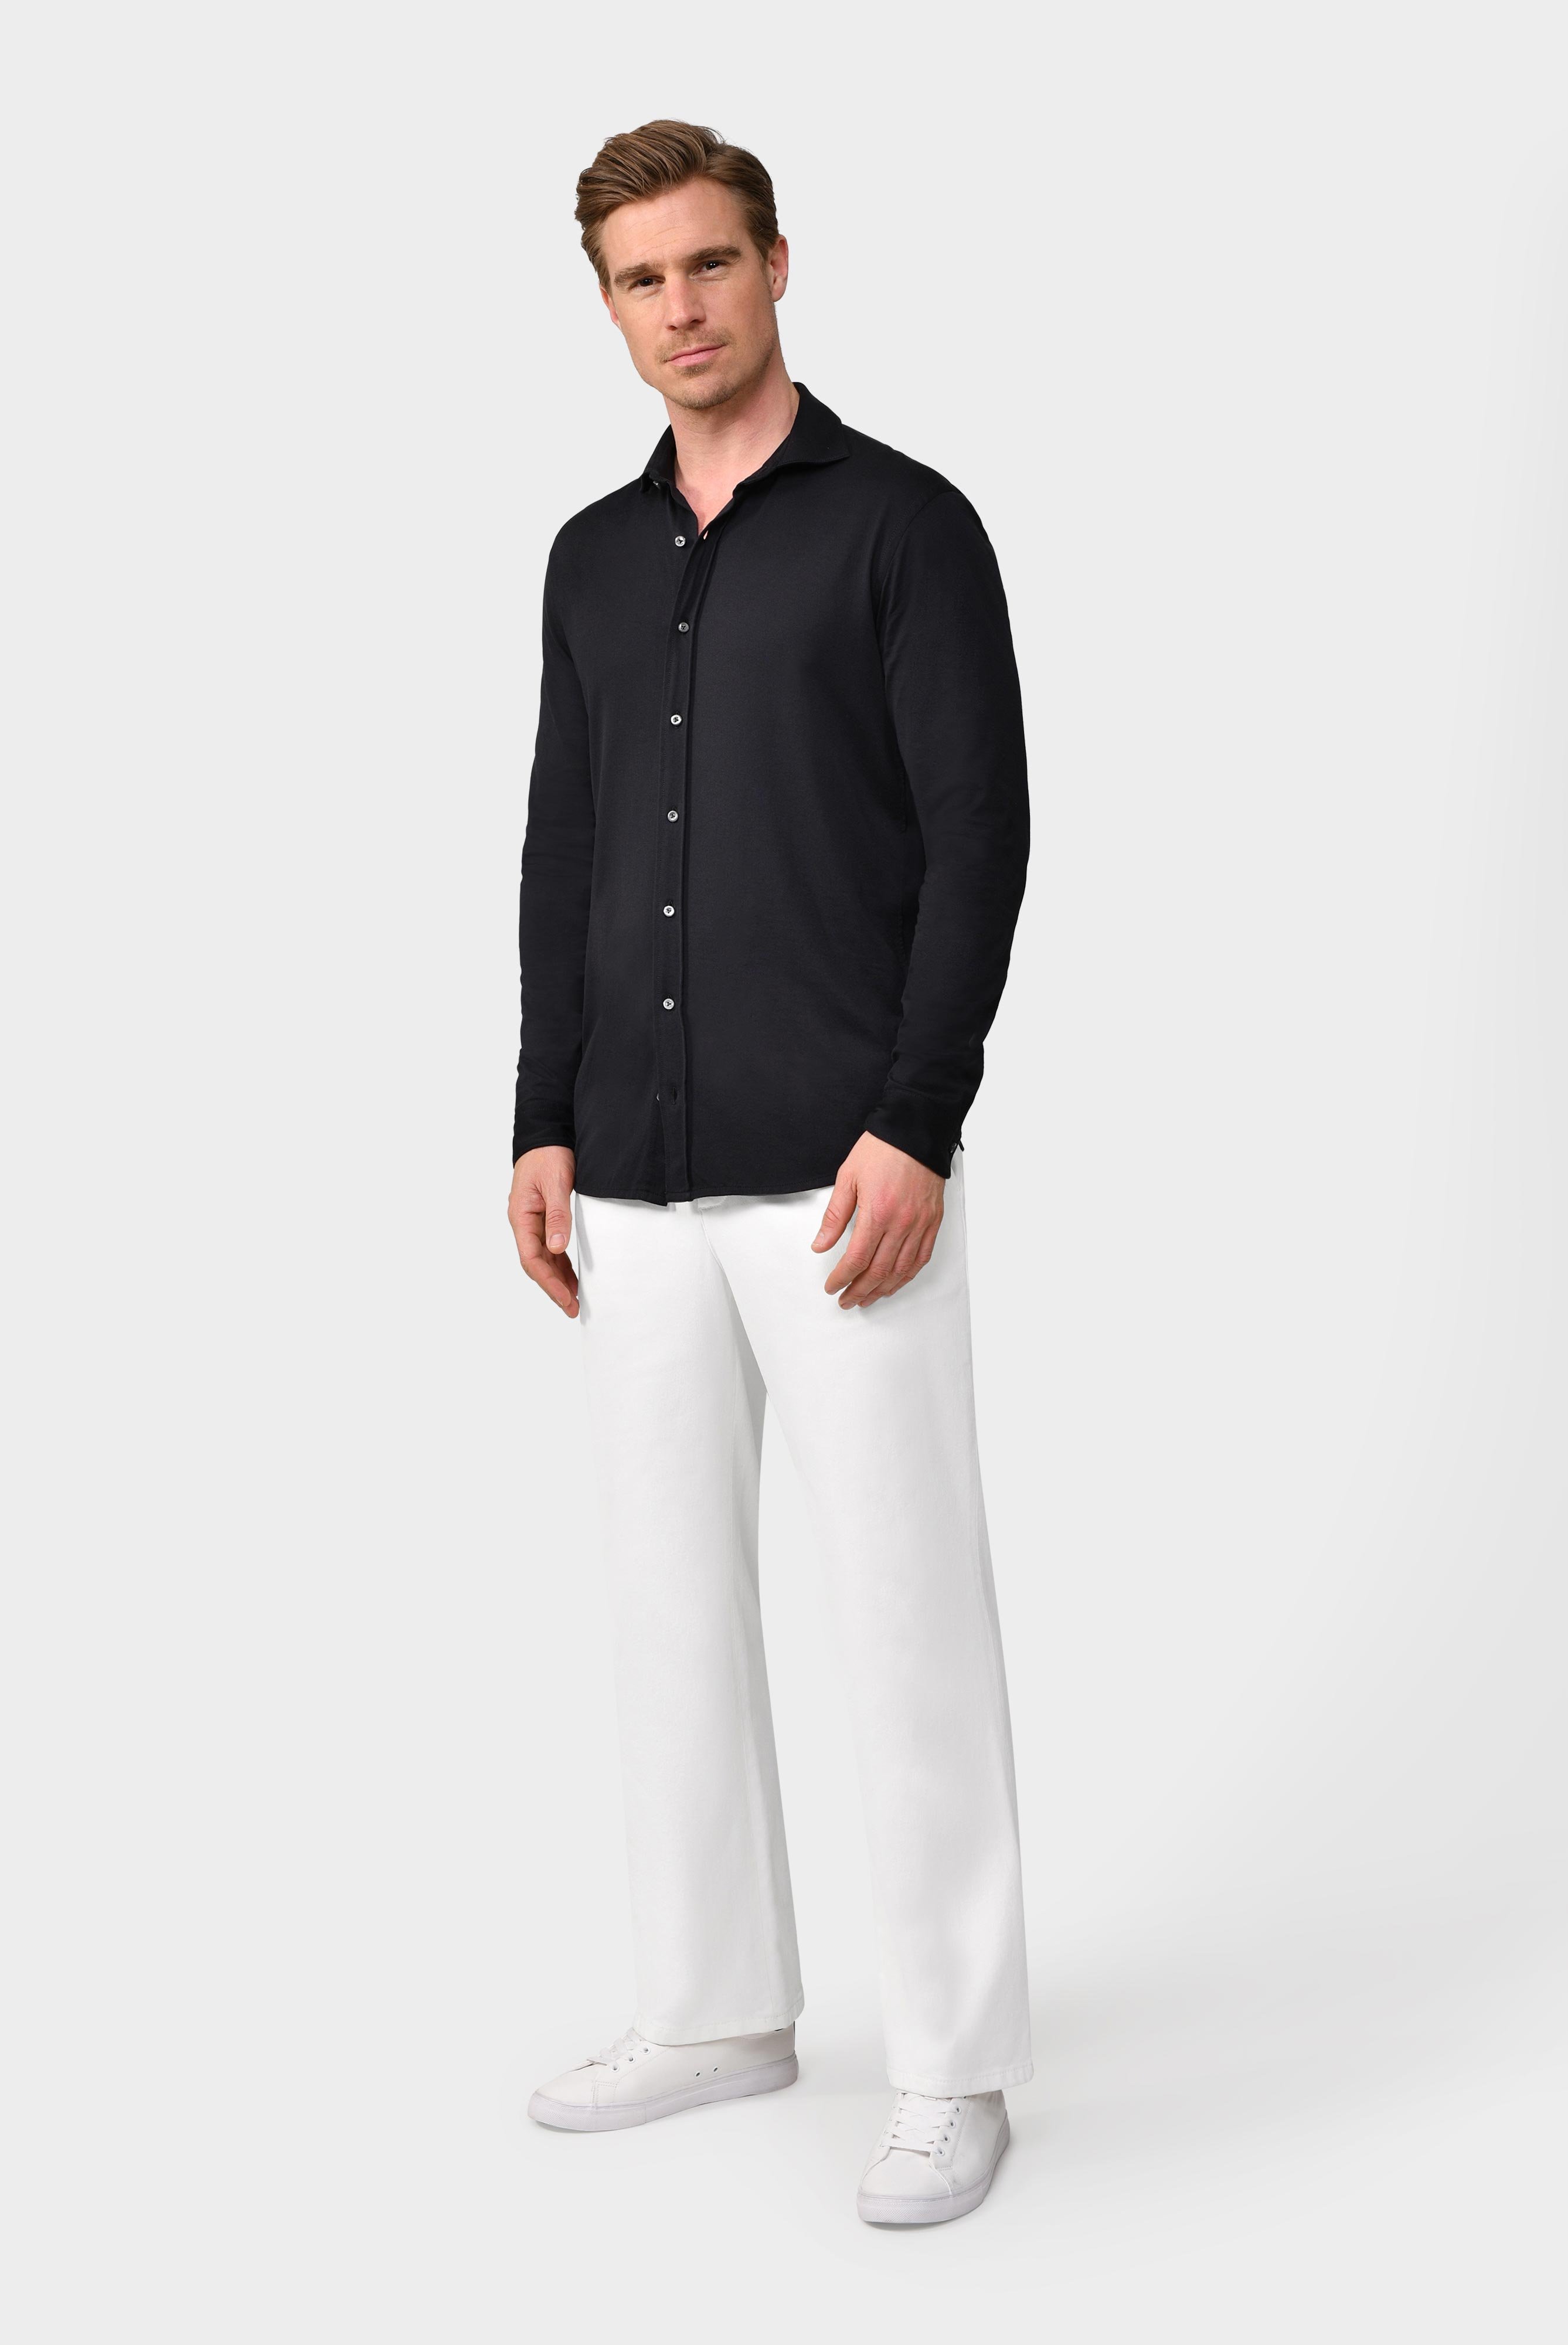 Jersey Hemden+Jersey Shirt Urban Look Slim Fit+20.1651.UC.Z20044.099.L